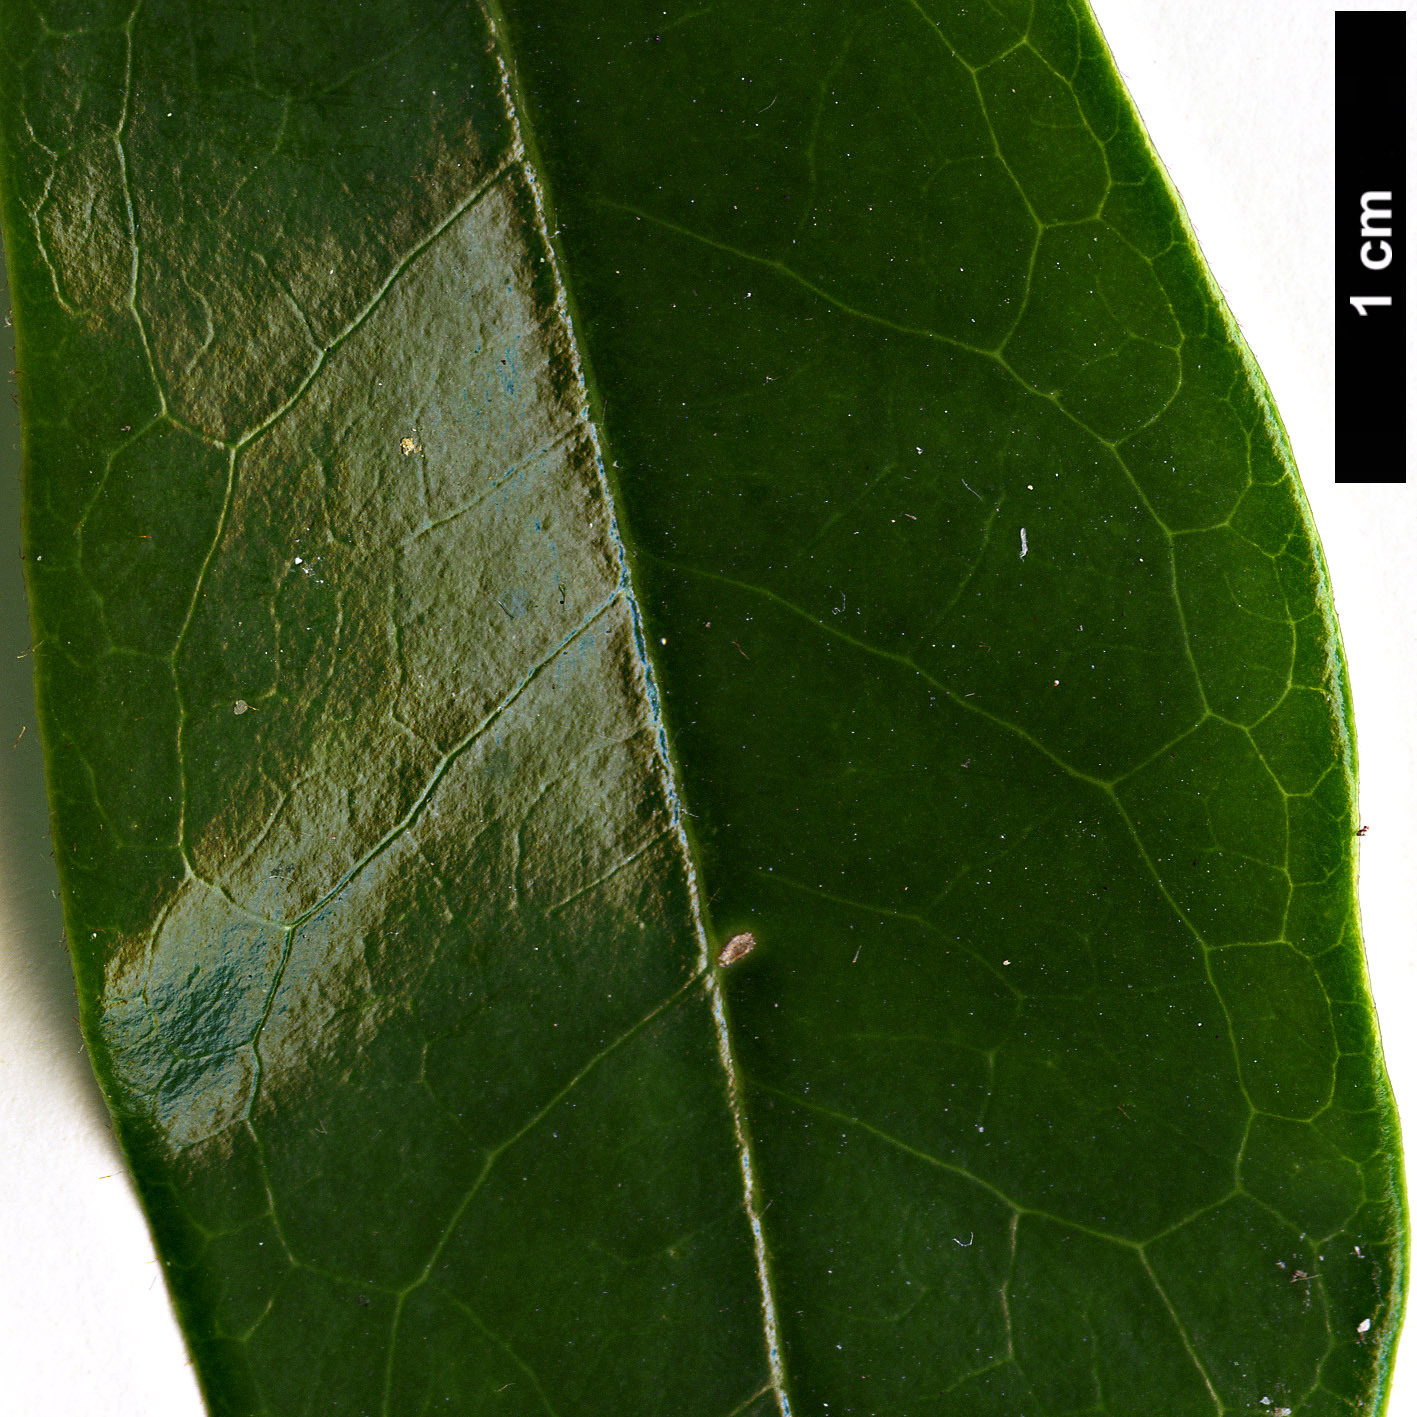 High resolution image: Family: Magnoliaceae - Genus: Magnolia - Taxon: figo - SpeciesSub: var. crassipes